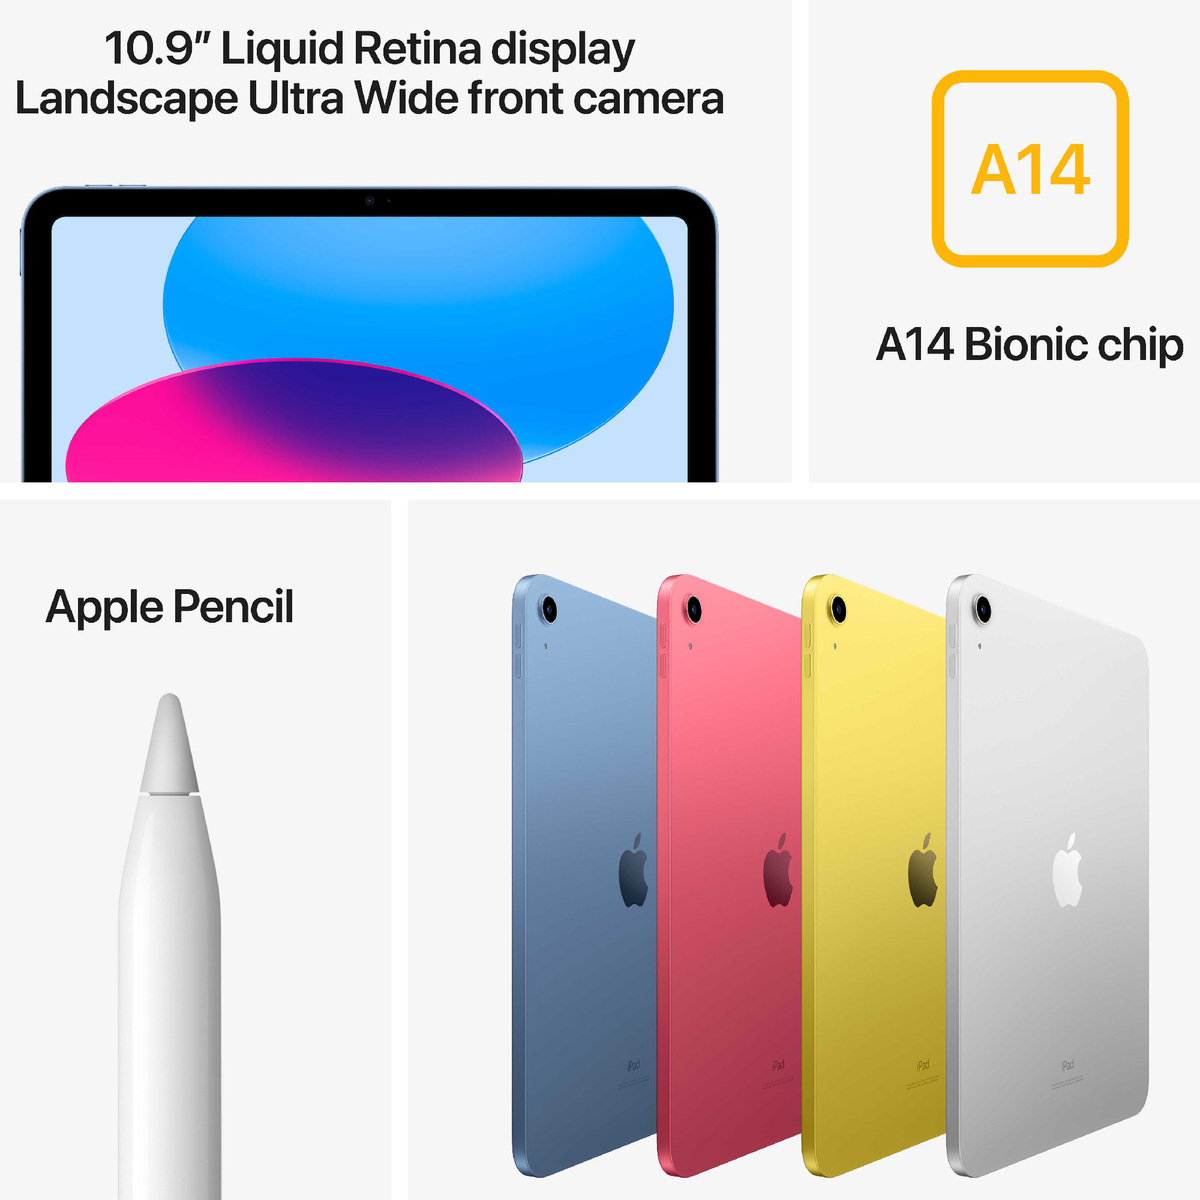 Apple 10.9-inch iPad, Wifi, 64 GB, Yellow